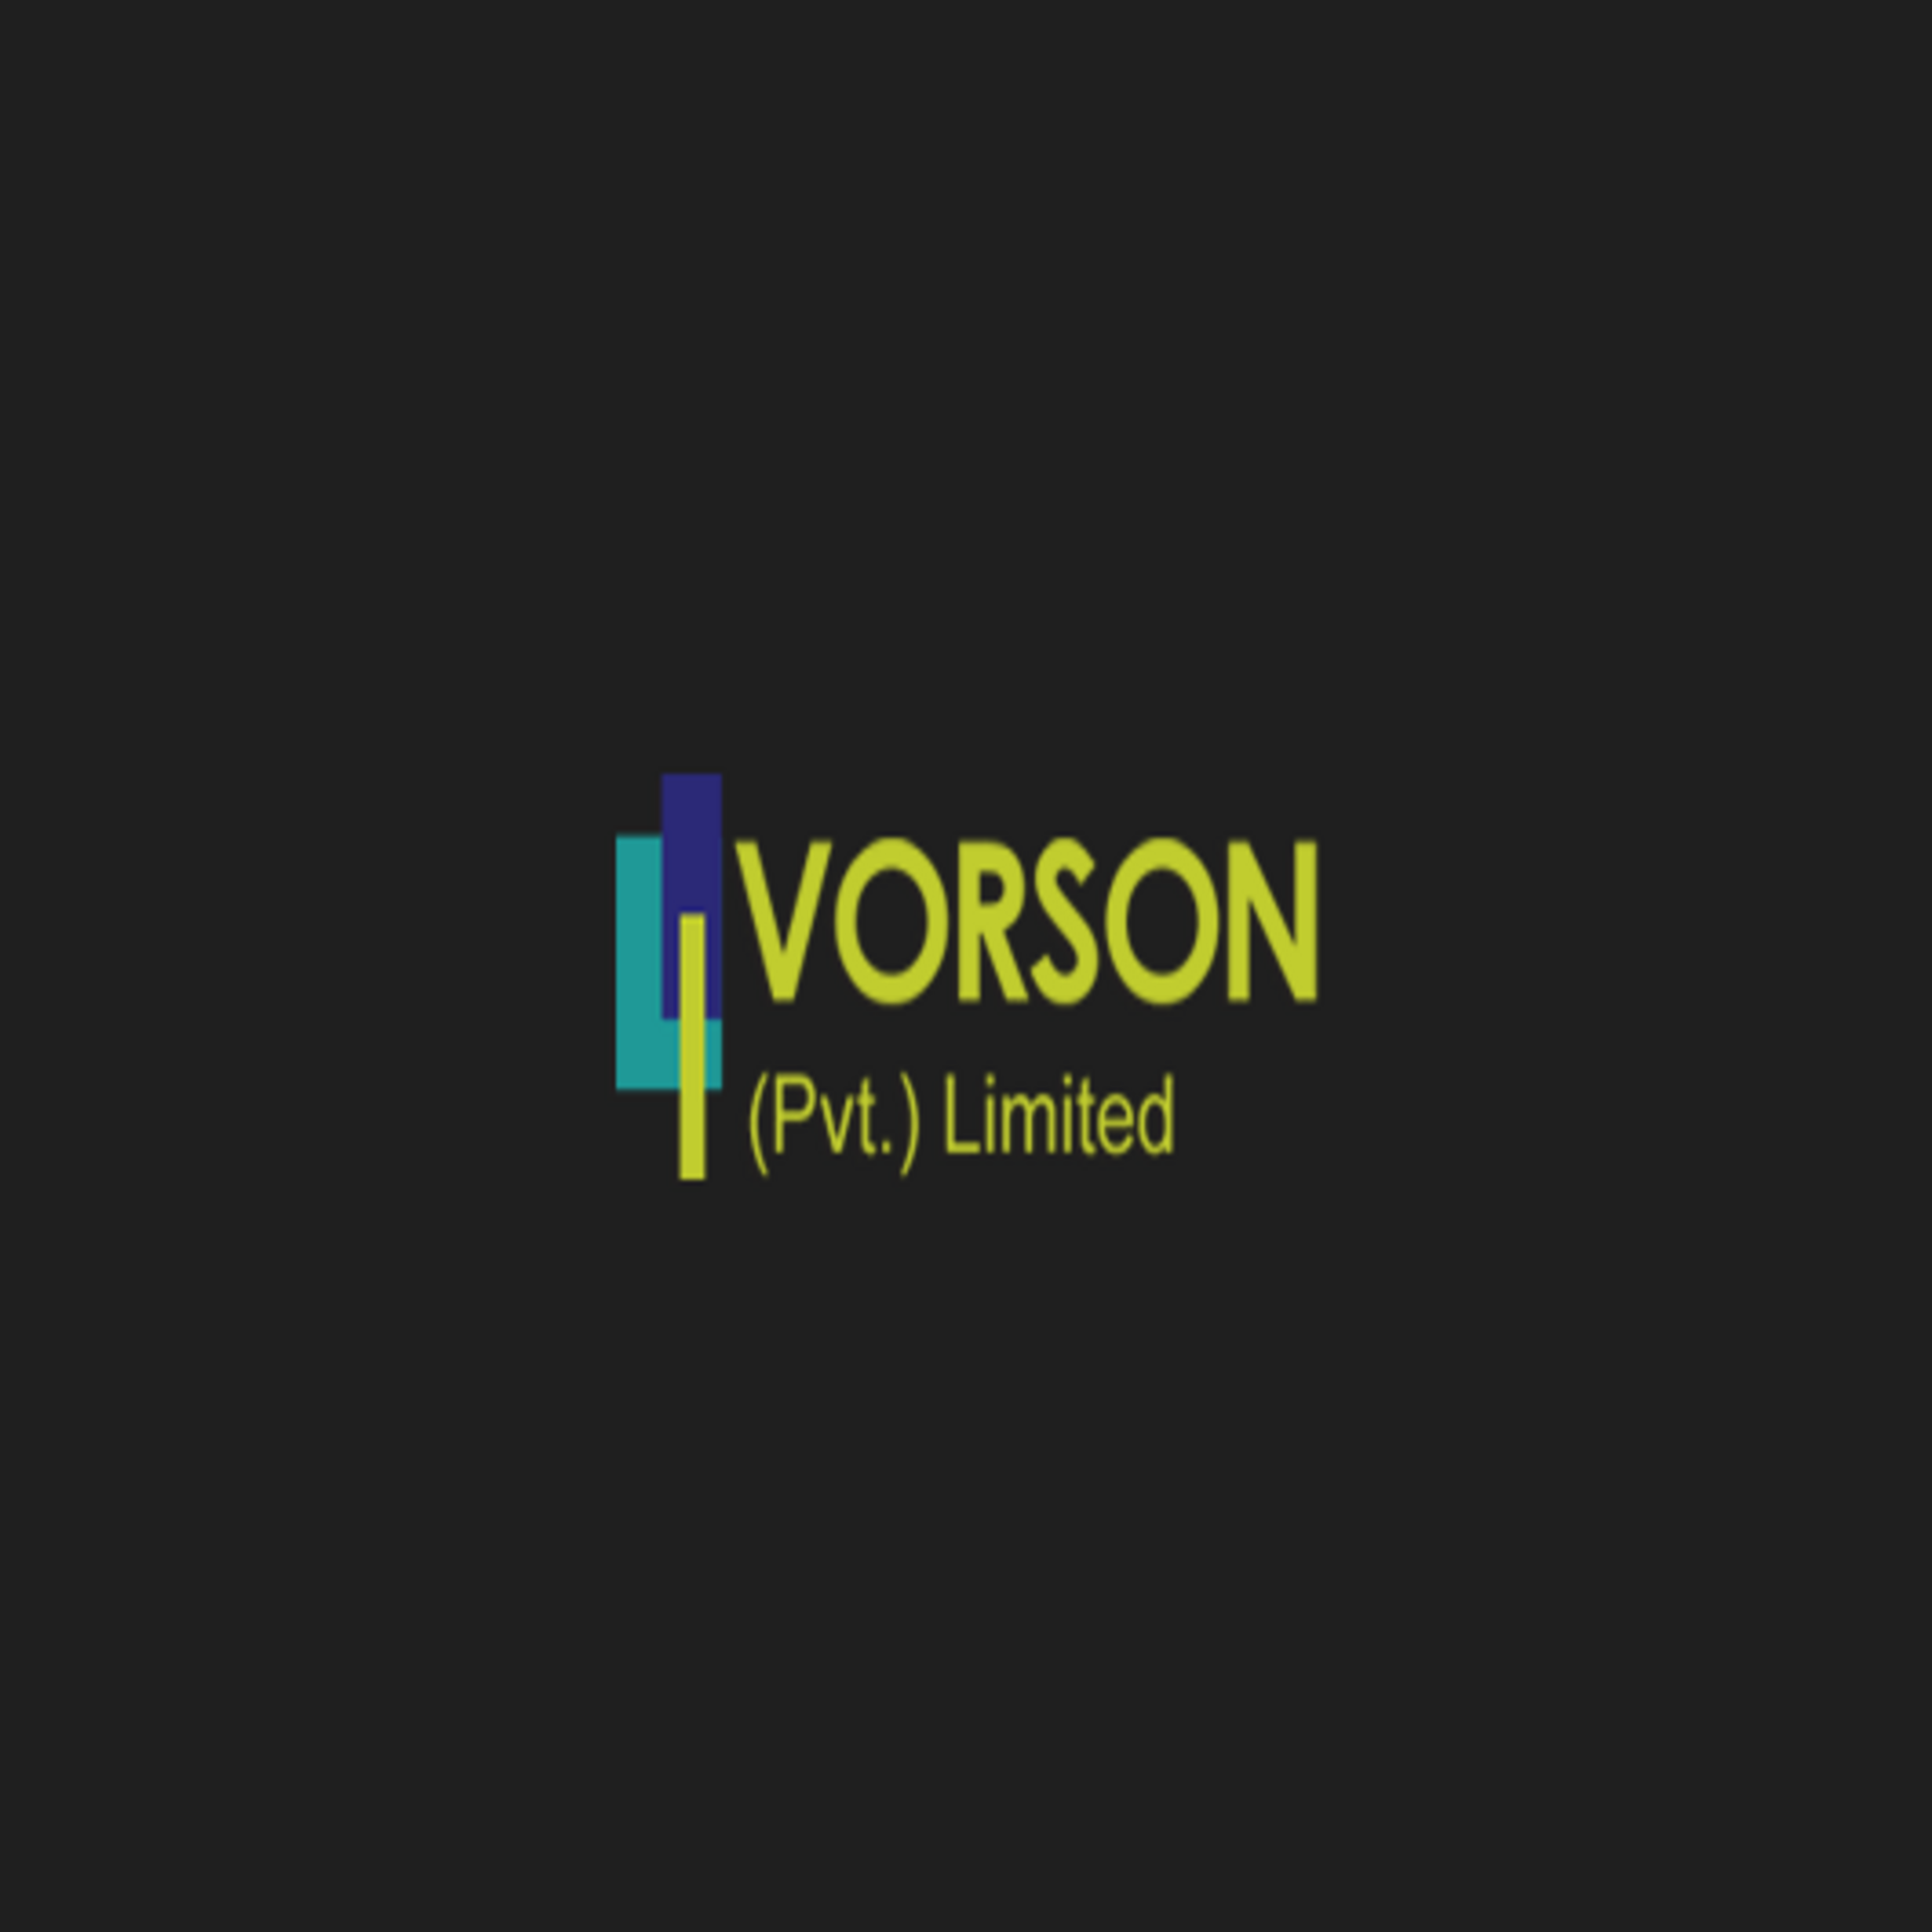 Vorson Private Limited